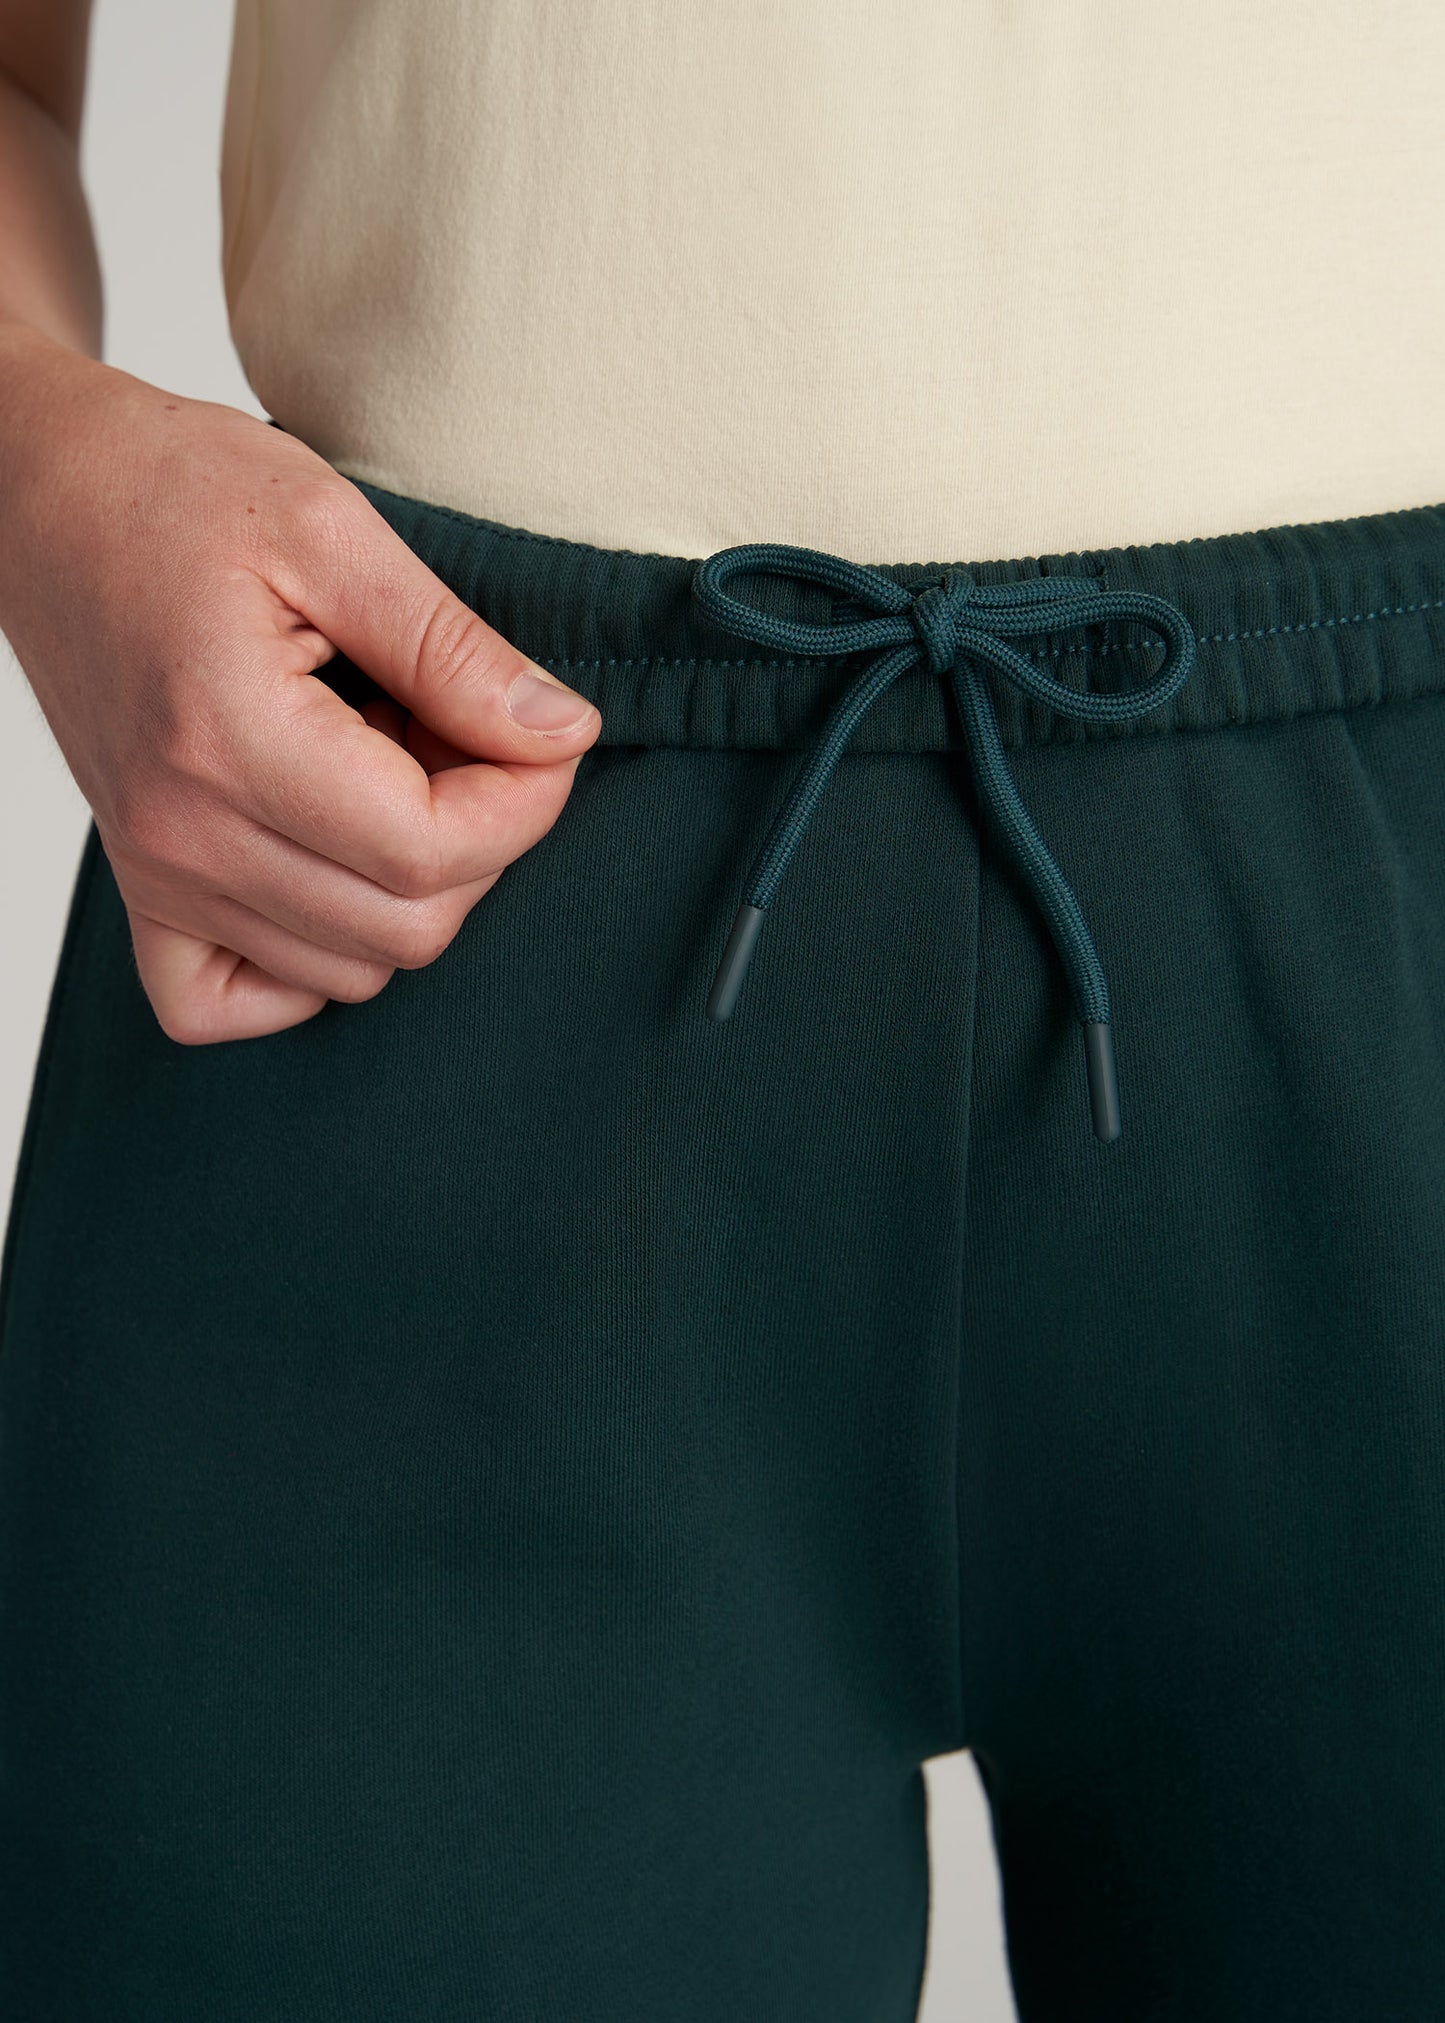 Wearever Slim-Fit Sweatpants for Tall Women